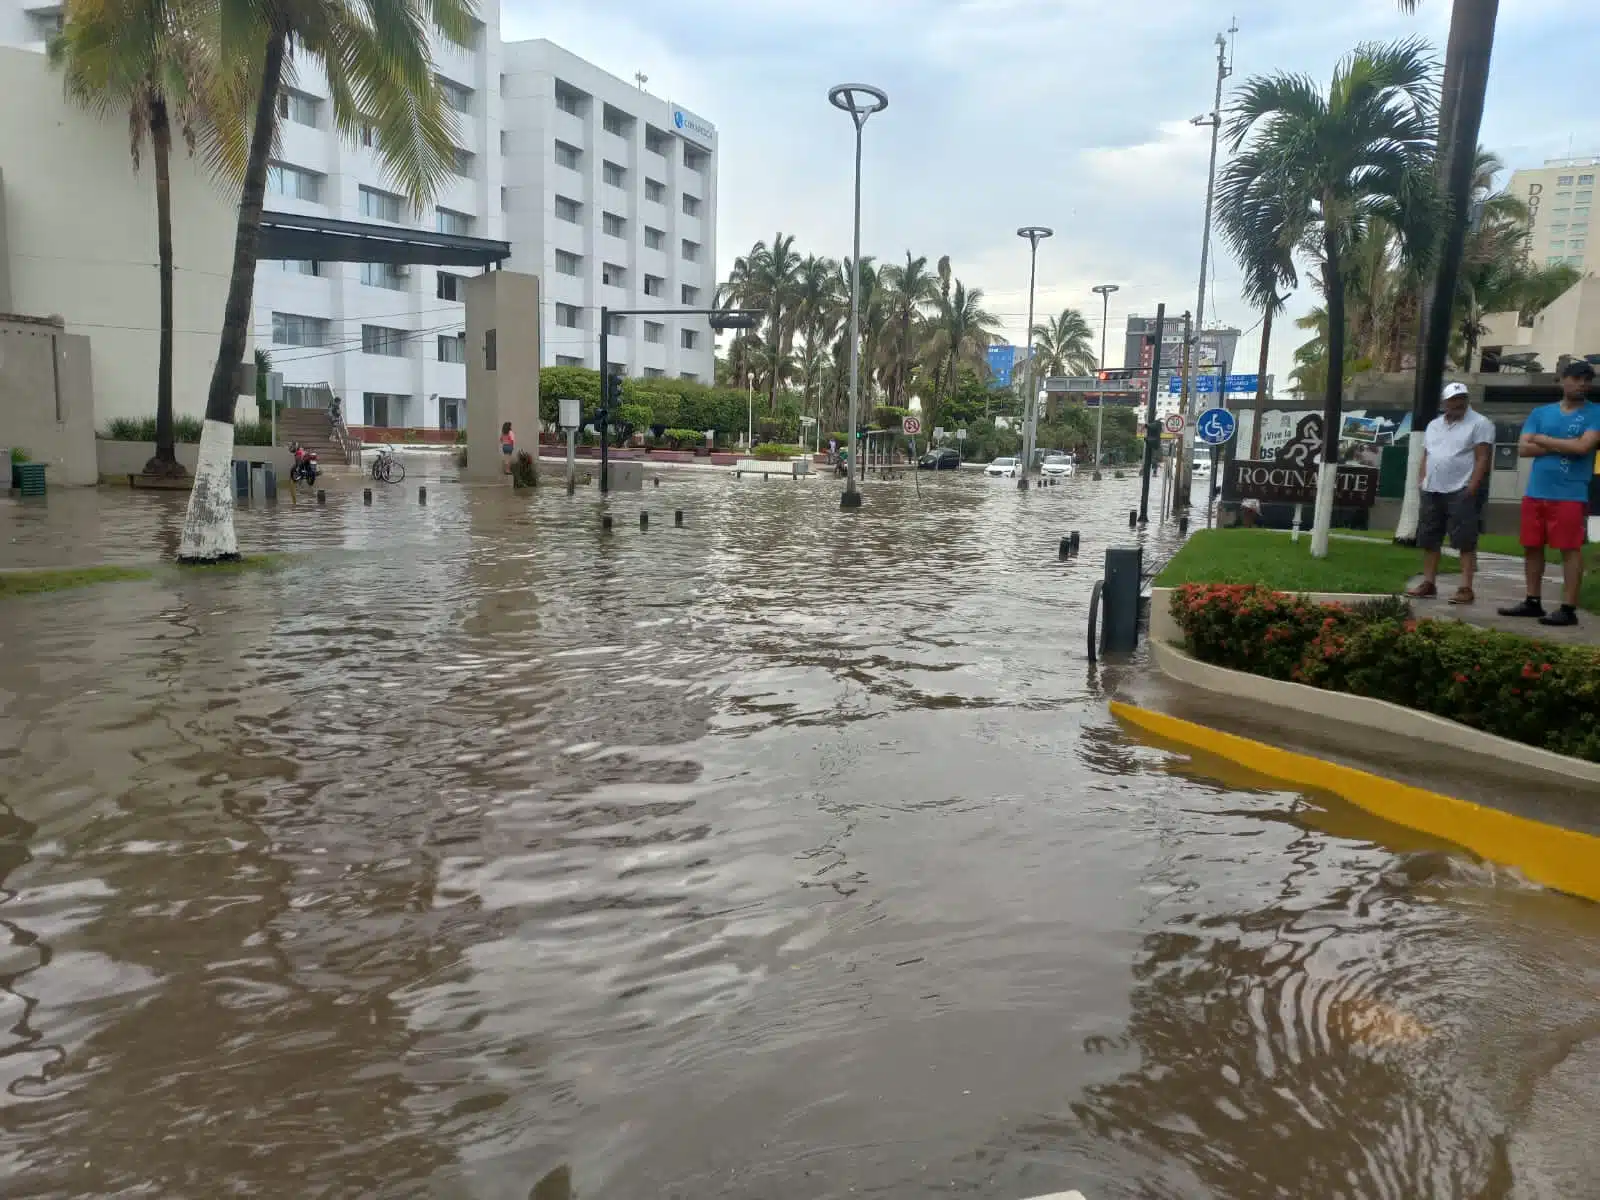 Avenida inundada, personas mirando y al fondo hoteles